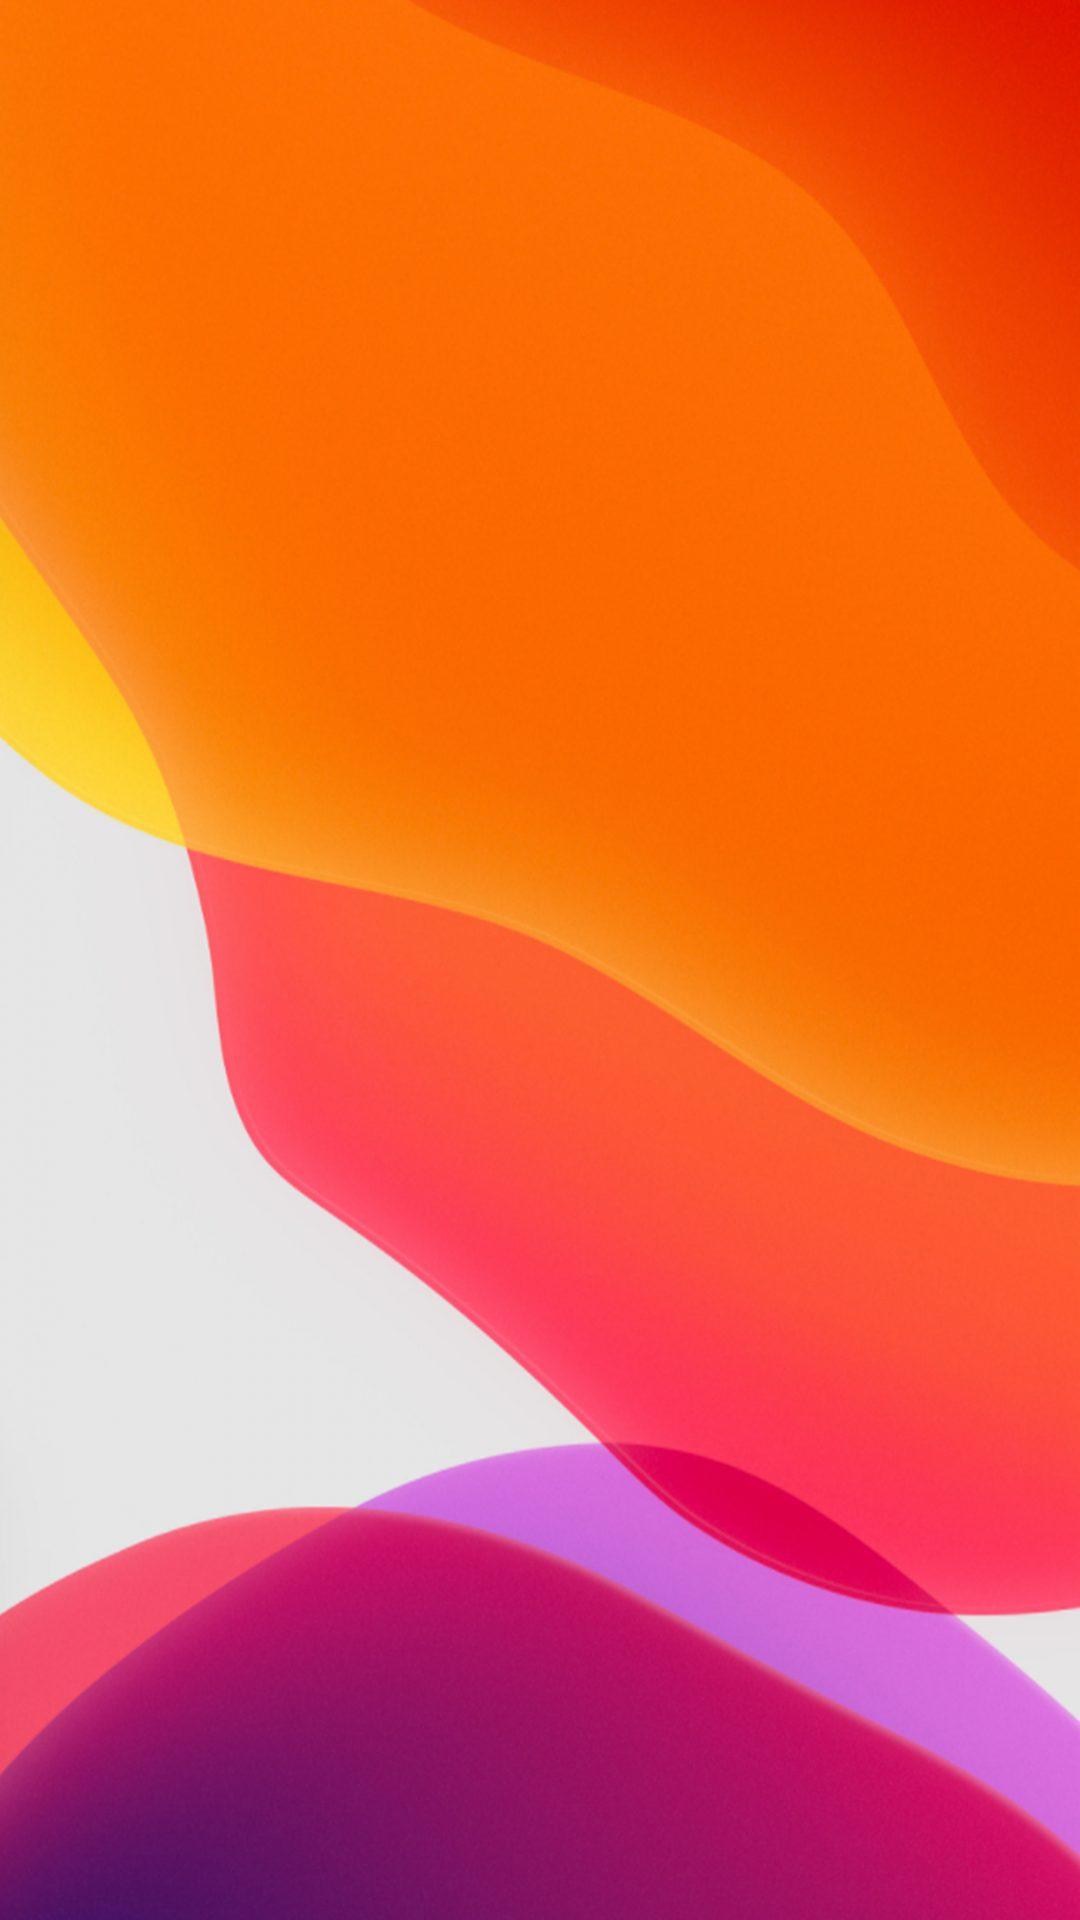 iOS 14 Wallpapers - Top Những Hình Ảnh Đẹp